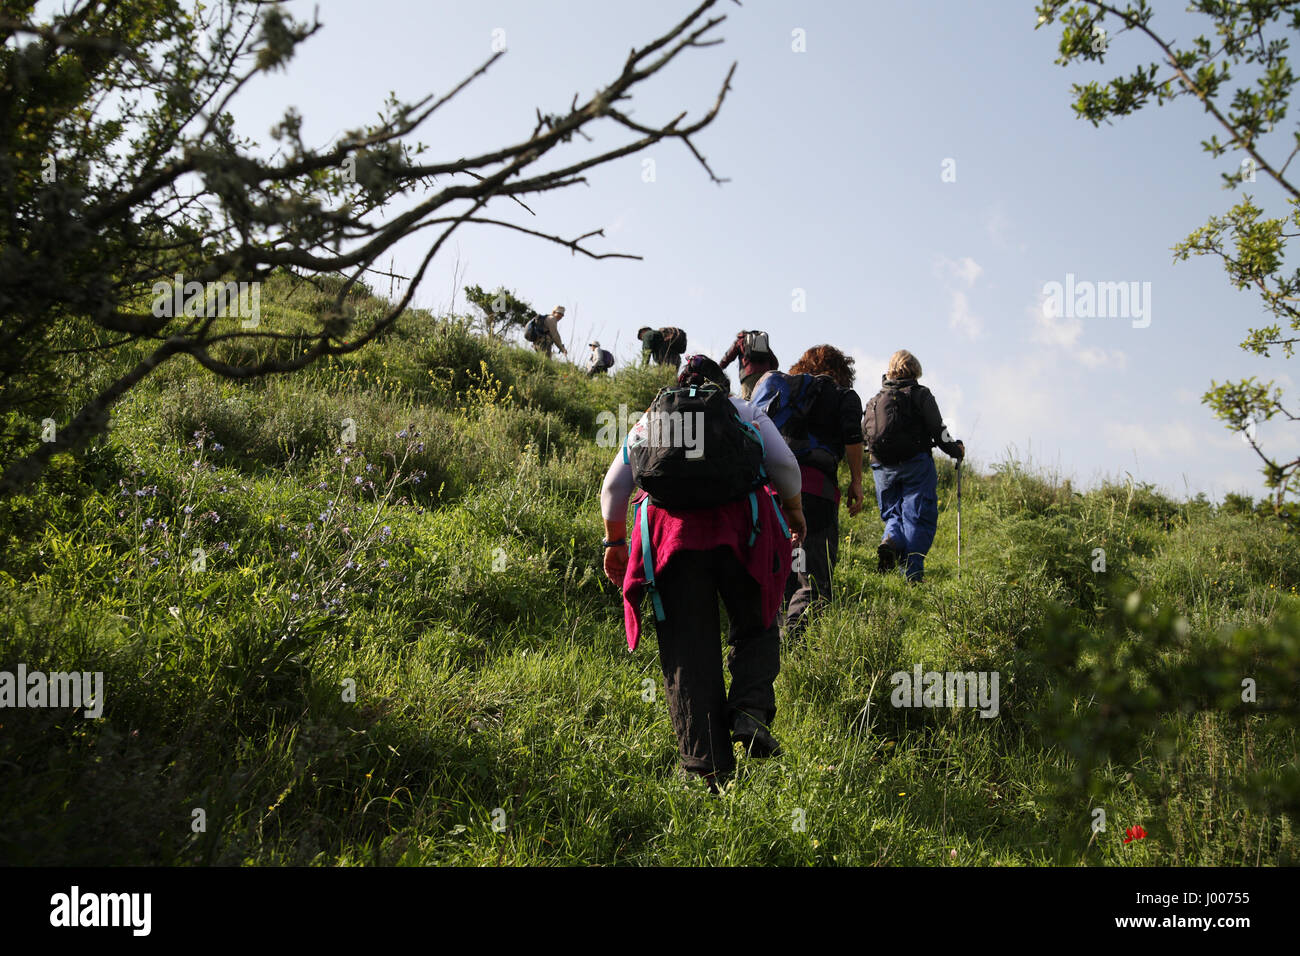 Senior Citizen escursione in arbusti e salire una ripida collina verde. Da Ein Hashofet, le altezze Menashe, all'estremità meridionale del Monte Carmelo, Israele. Foto Stock